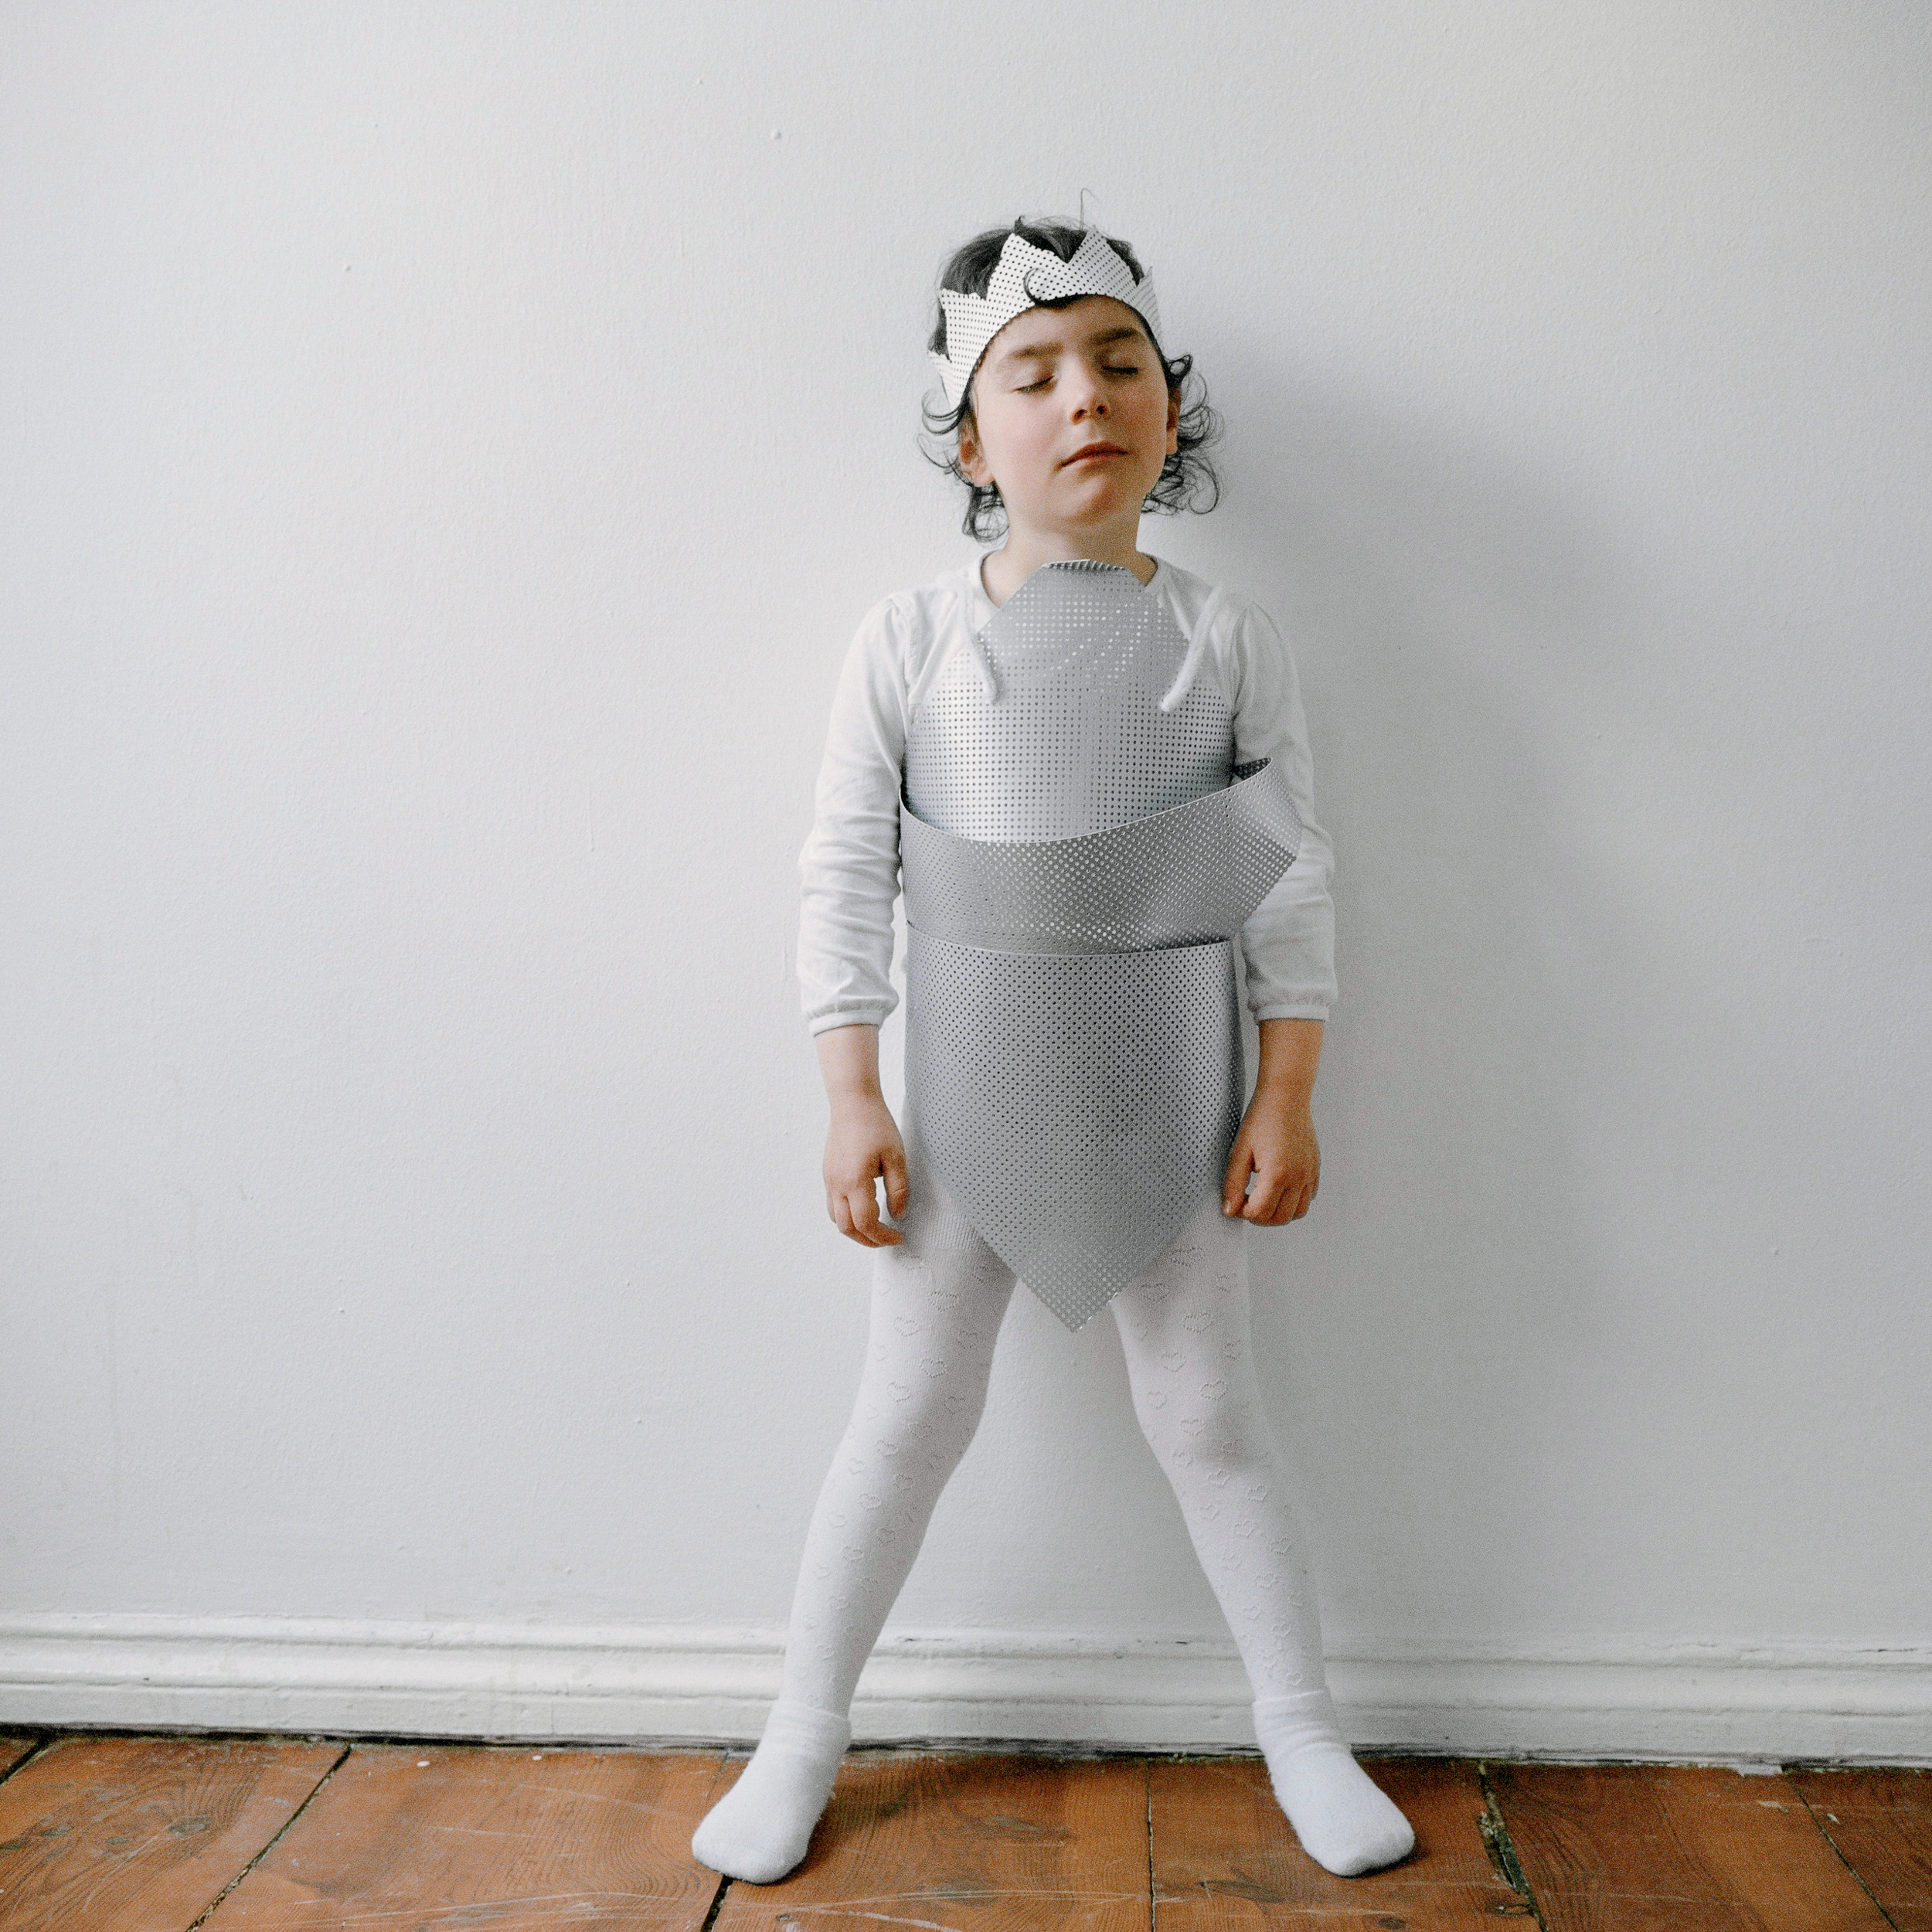 Ein kleines Mädchen steht in Strumpfhose und selbstgebastelter grauer Rüstung und mit einer grauen Krone auf dem Kopf vor einer weißen Wand.